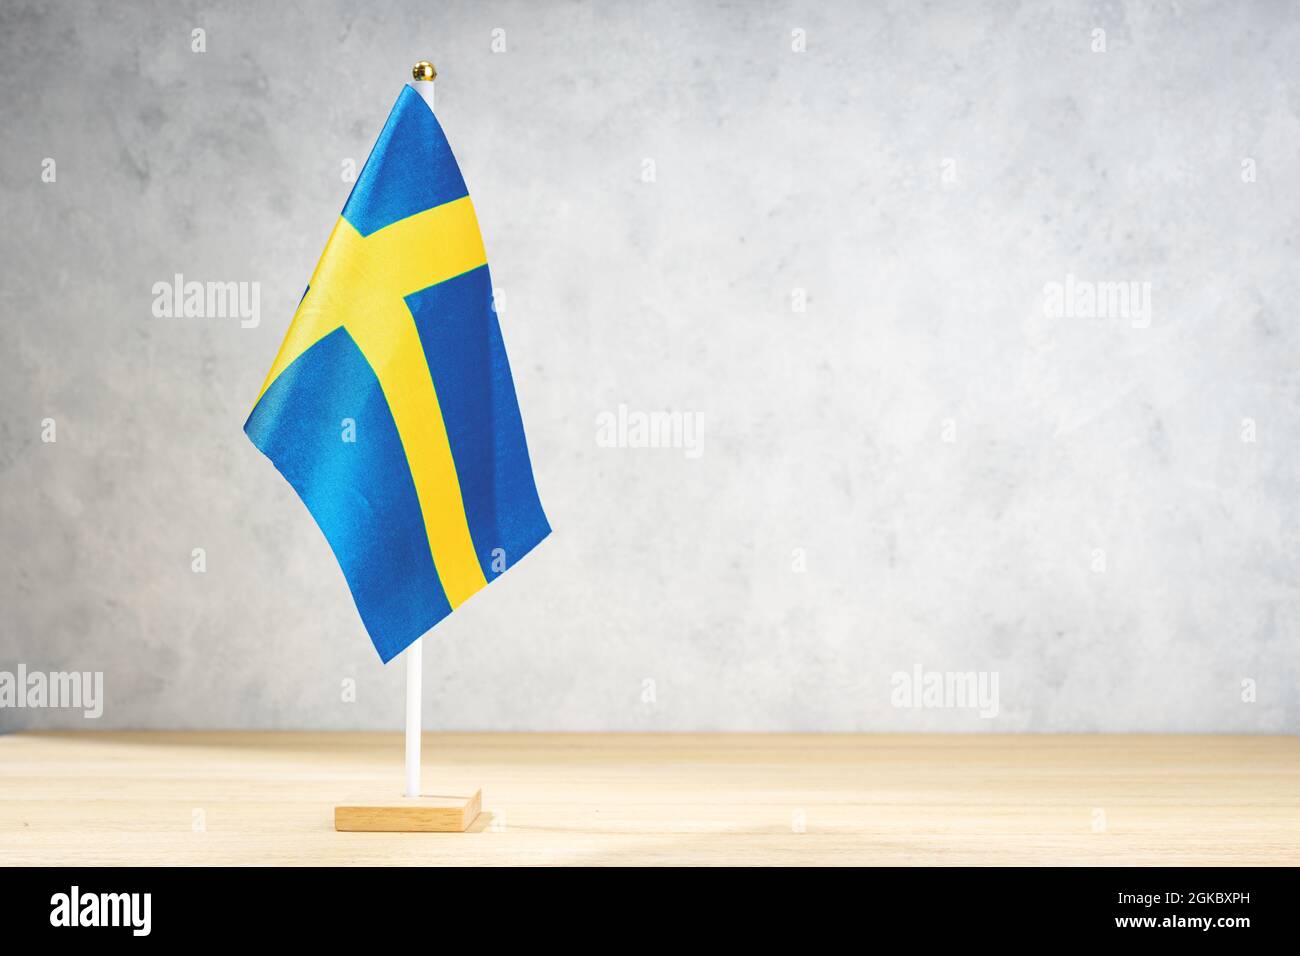 Drapeau de la Suède sur un mur texturé blanc. Espace de copie pour le texte, les conceptions ou les mises en plan Banque D'Images